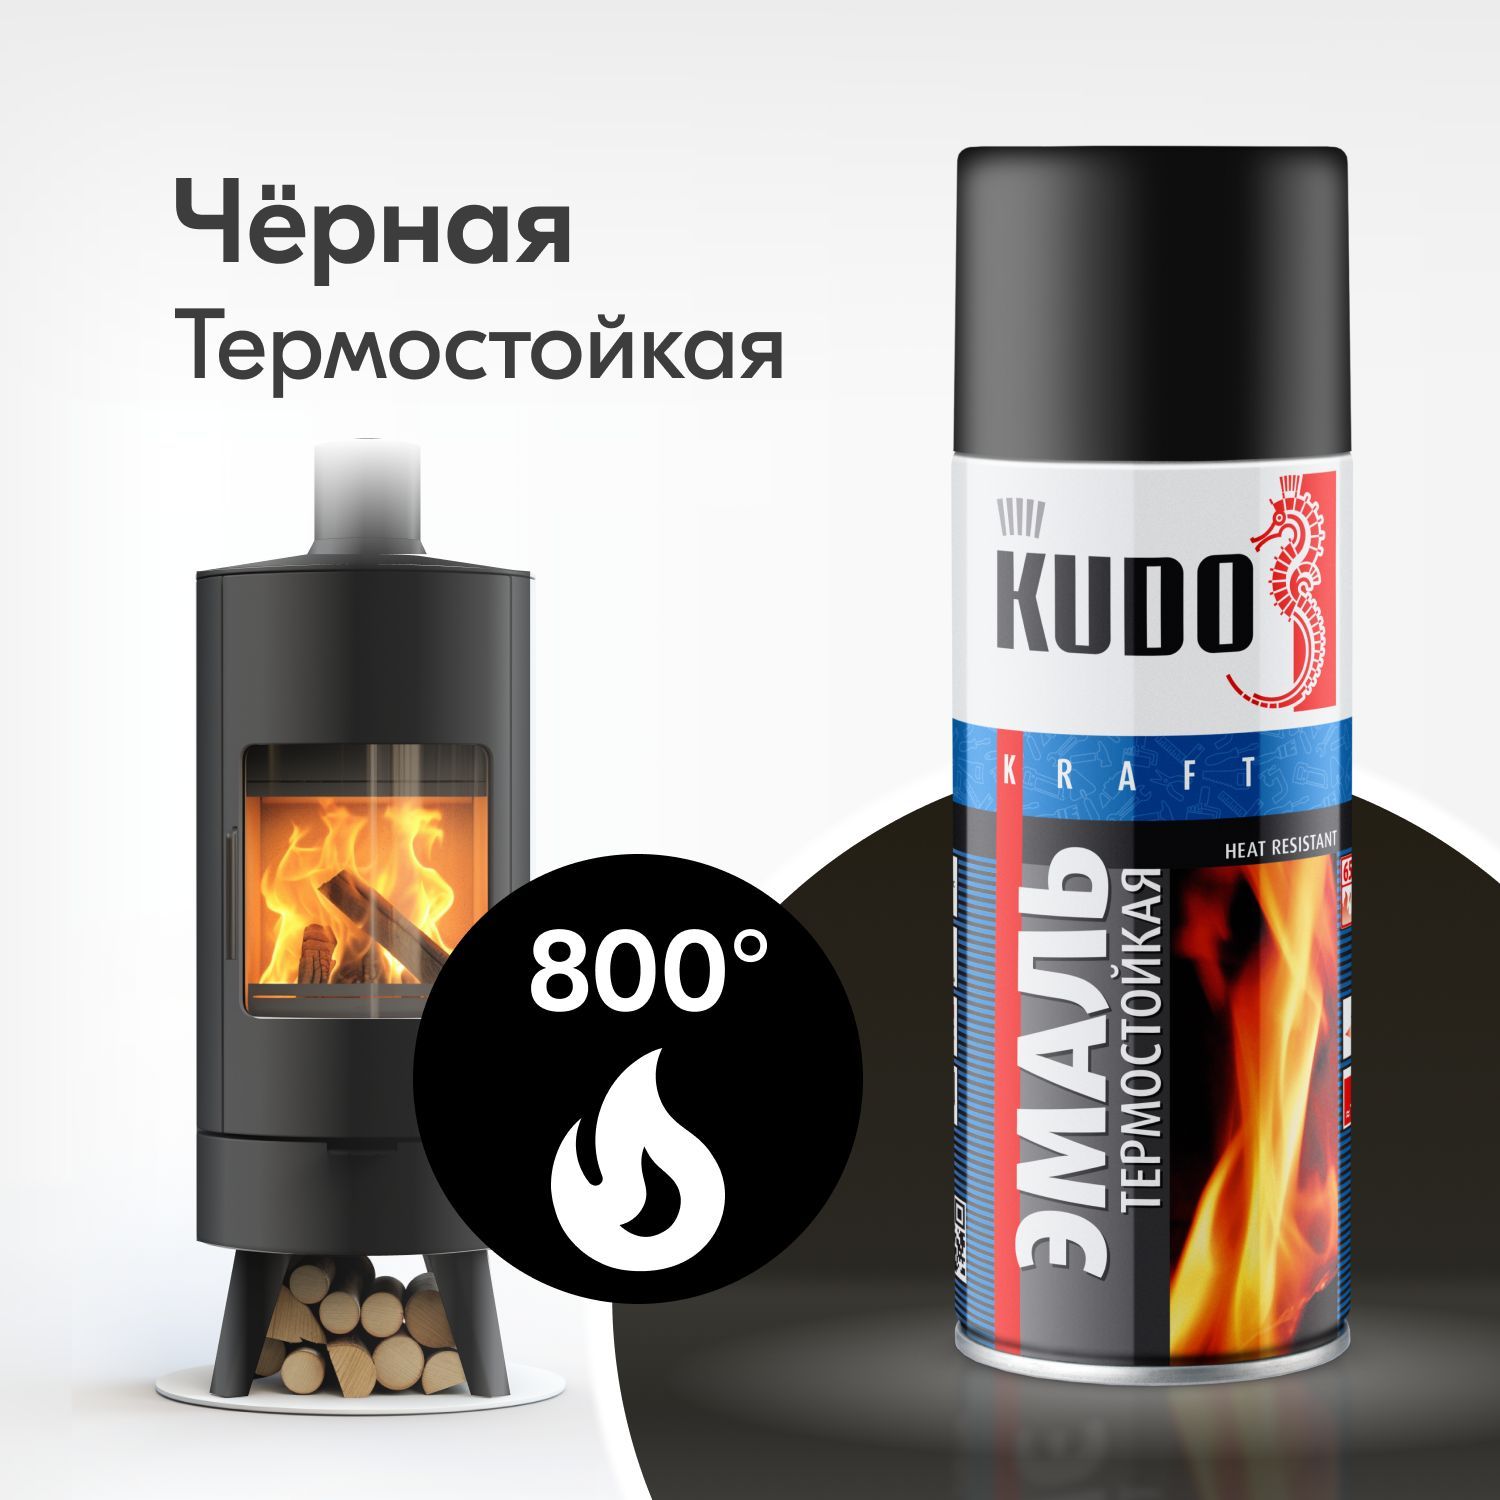 Купить термостойкую краску по металлу в СПб | Цена термостойкой эмали в Санкт-Петербурге